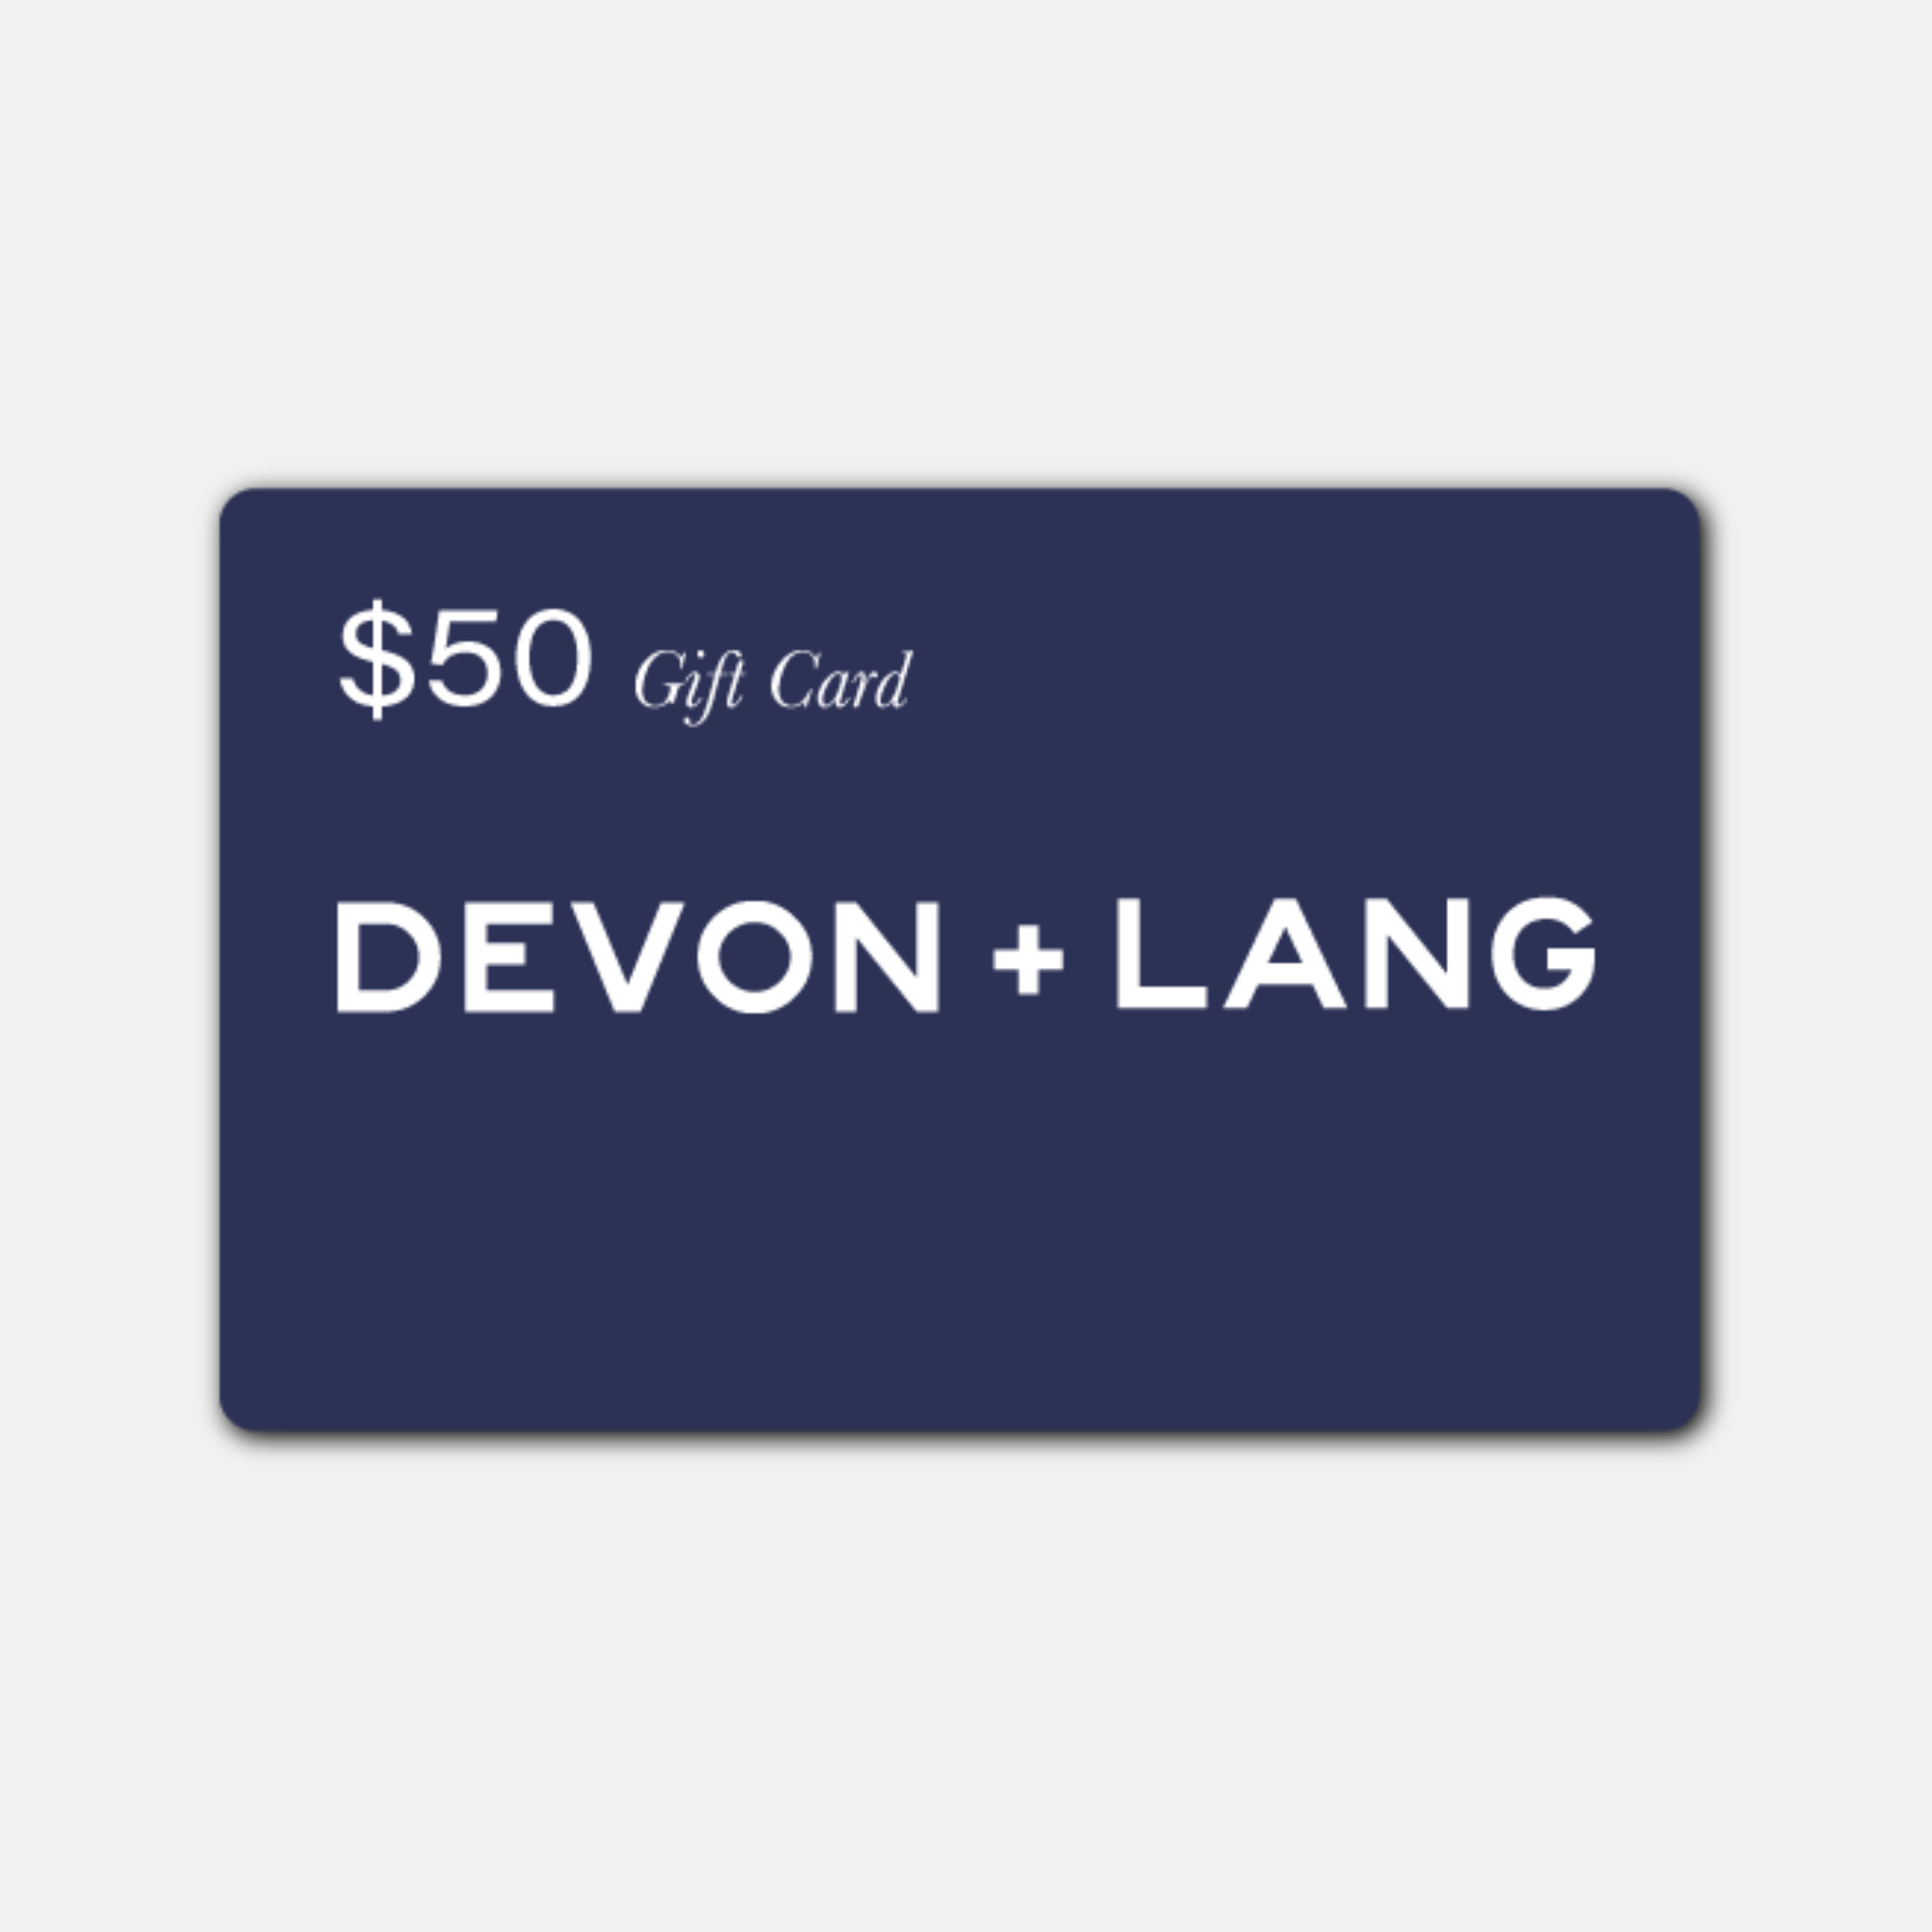 Devon + Lang Gift Card